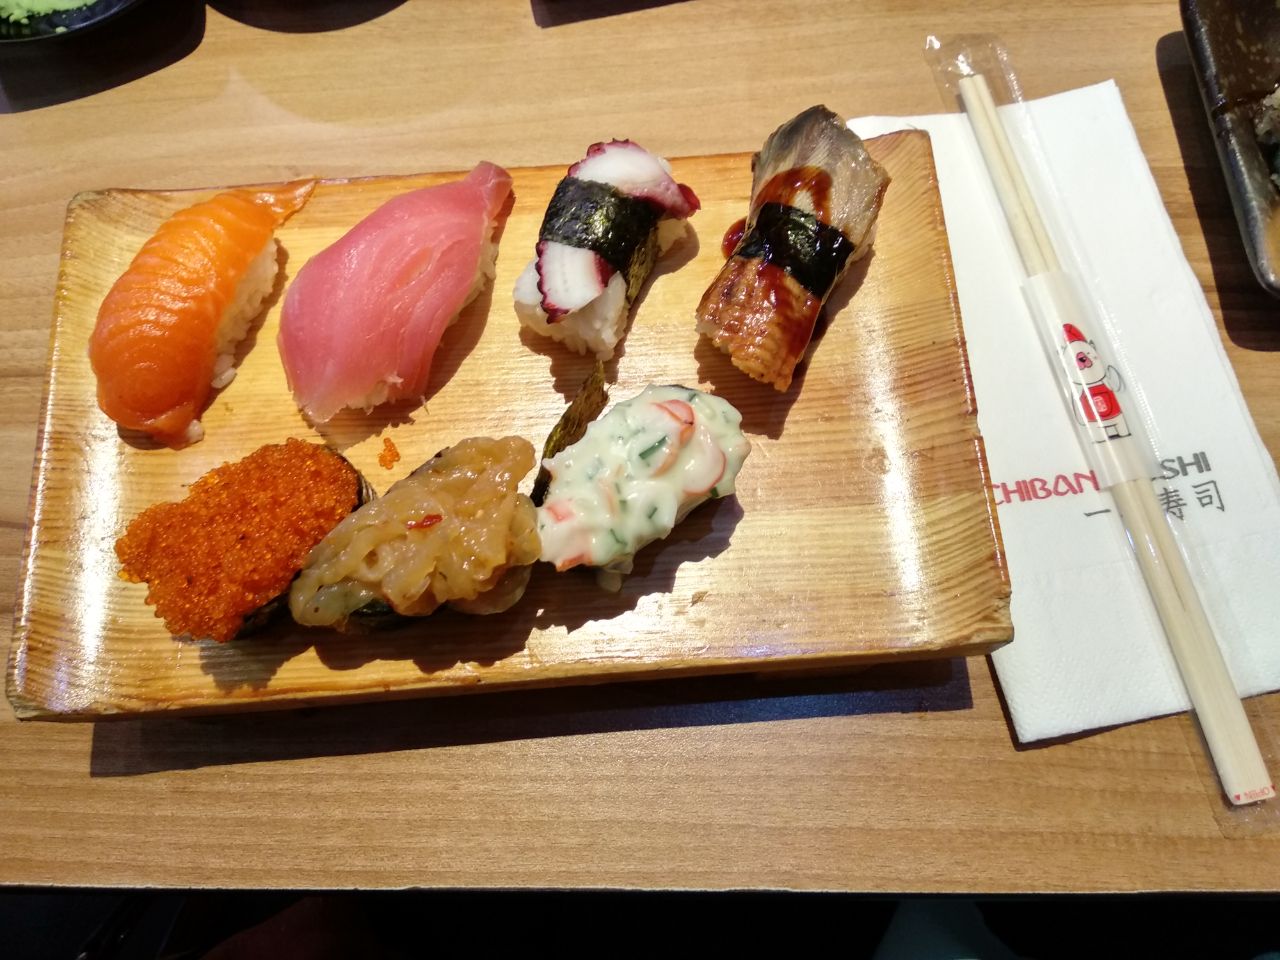 Fusion sushi